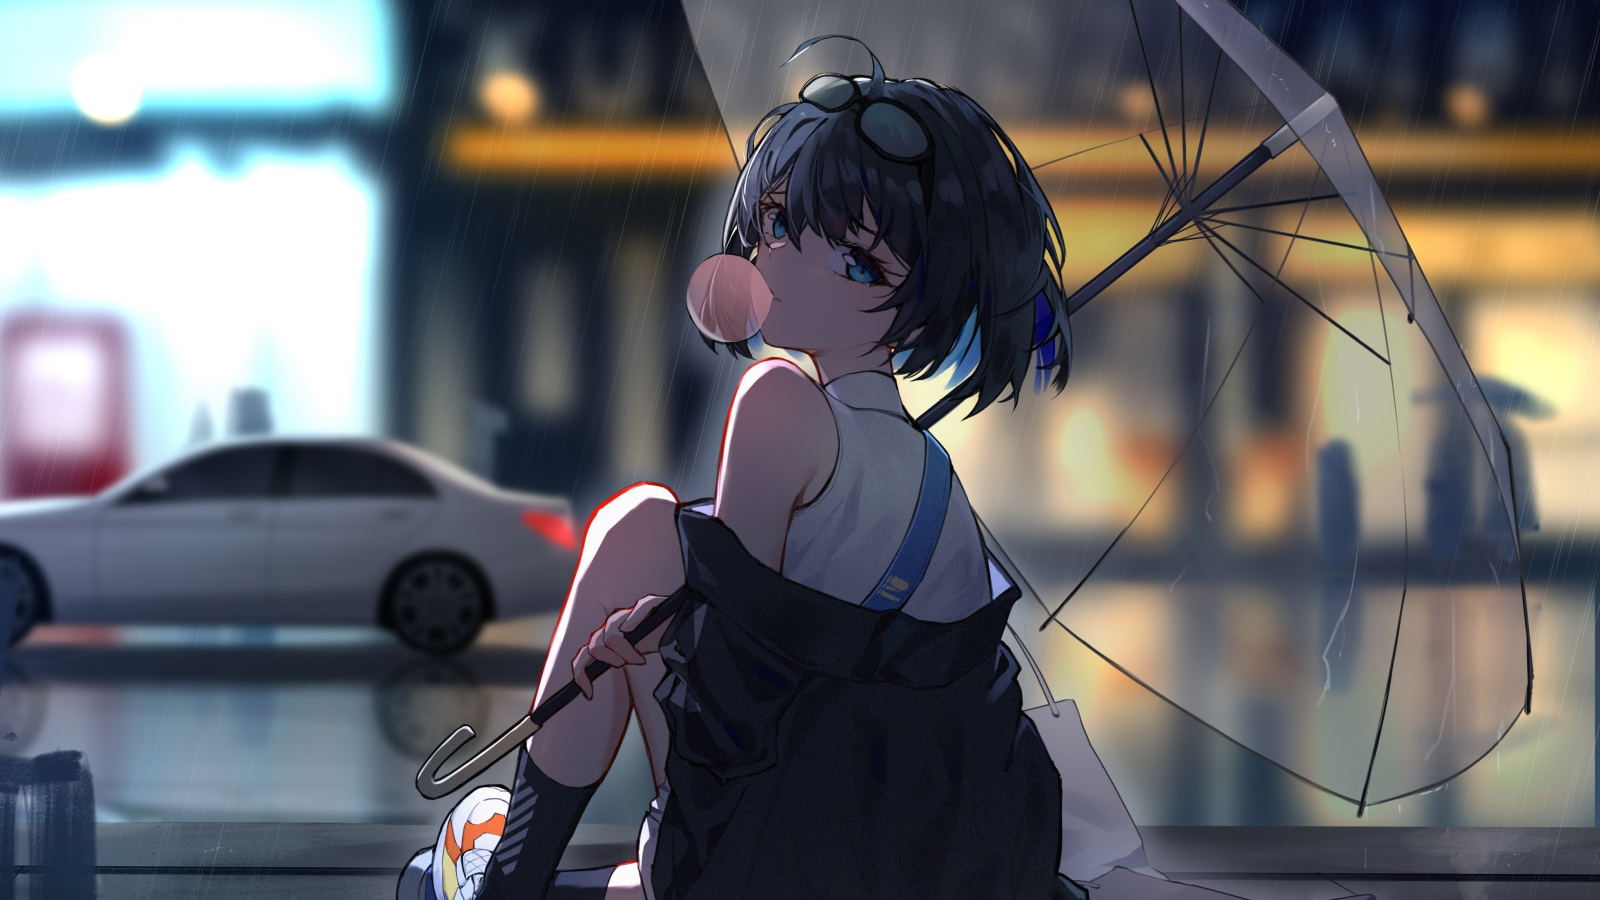 Download wallpaper 1600x900 enjoying rain, anime girl, 16:9 widescreen  1600x900 hd background, 25093